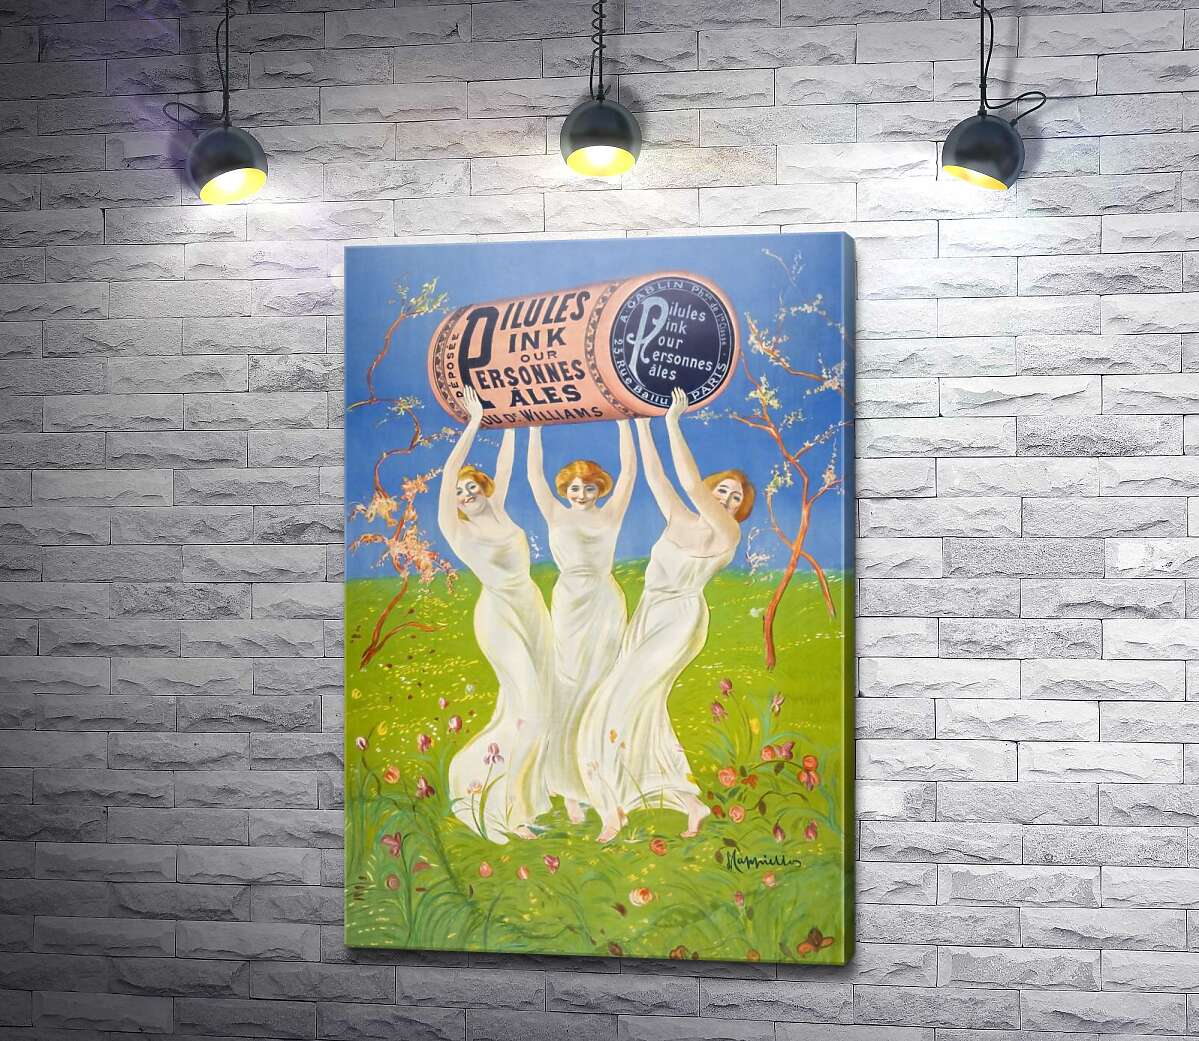 картина Винтажный плакат с девушками в белых платьях с бочкой эля